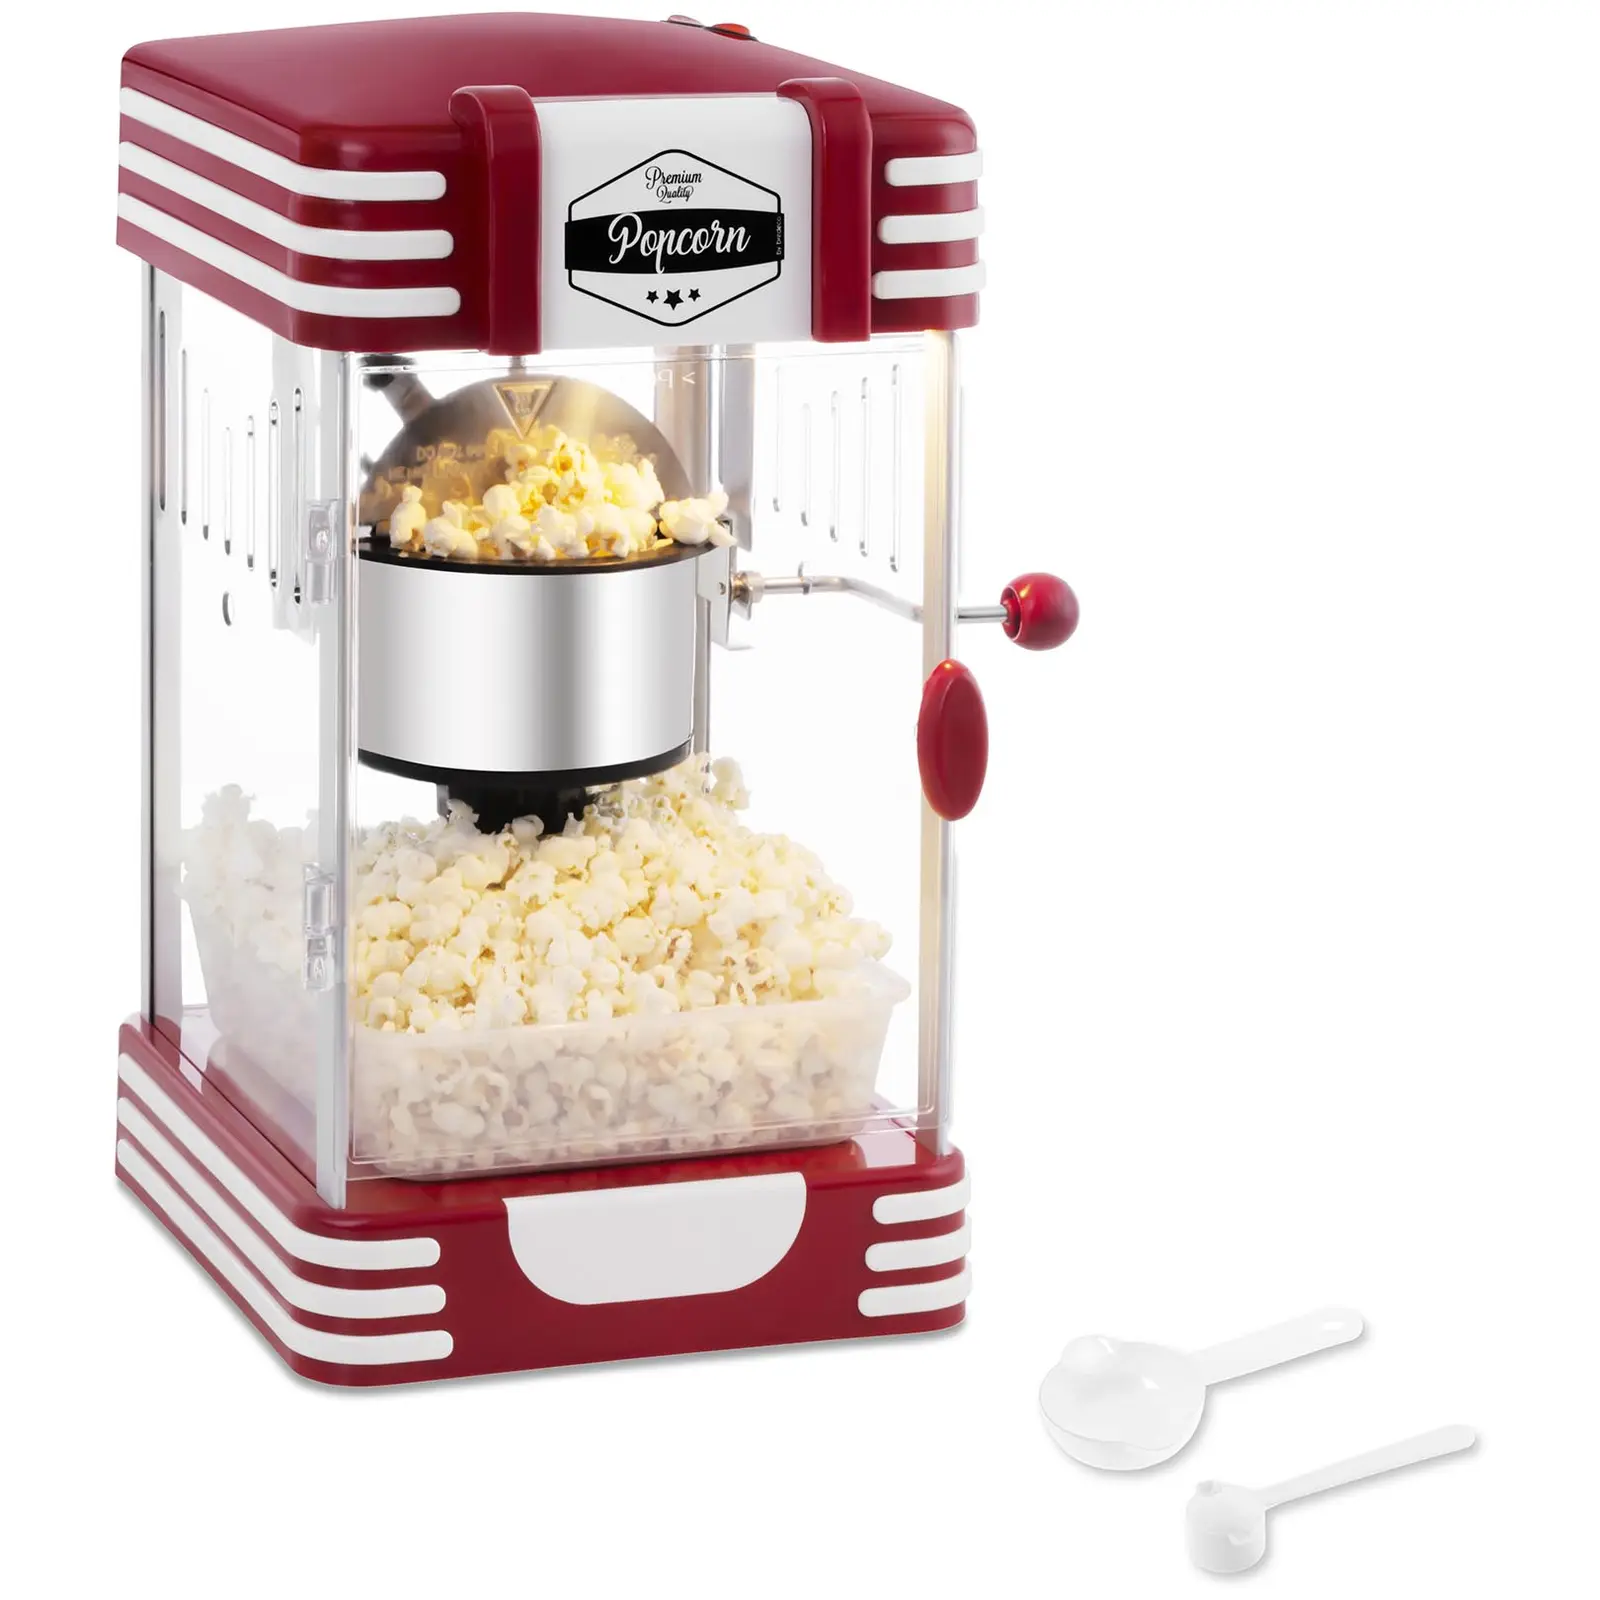 Aparat de făcut popcorn - Design retro din anii '50 - Roșu